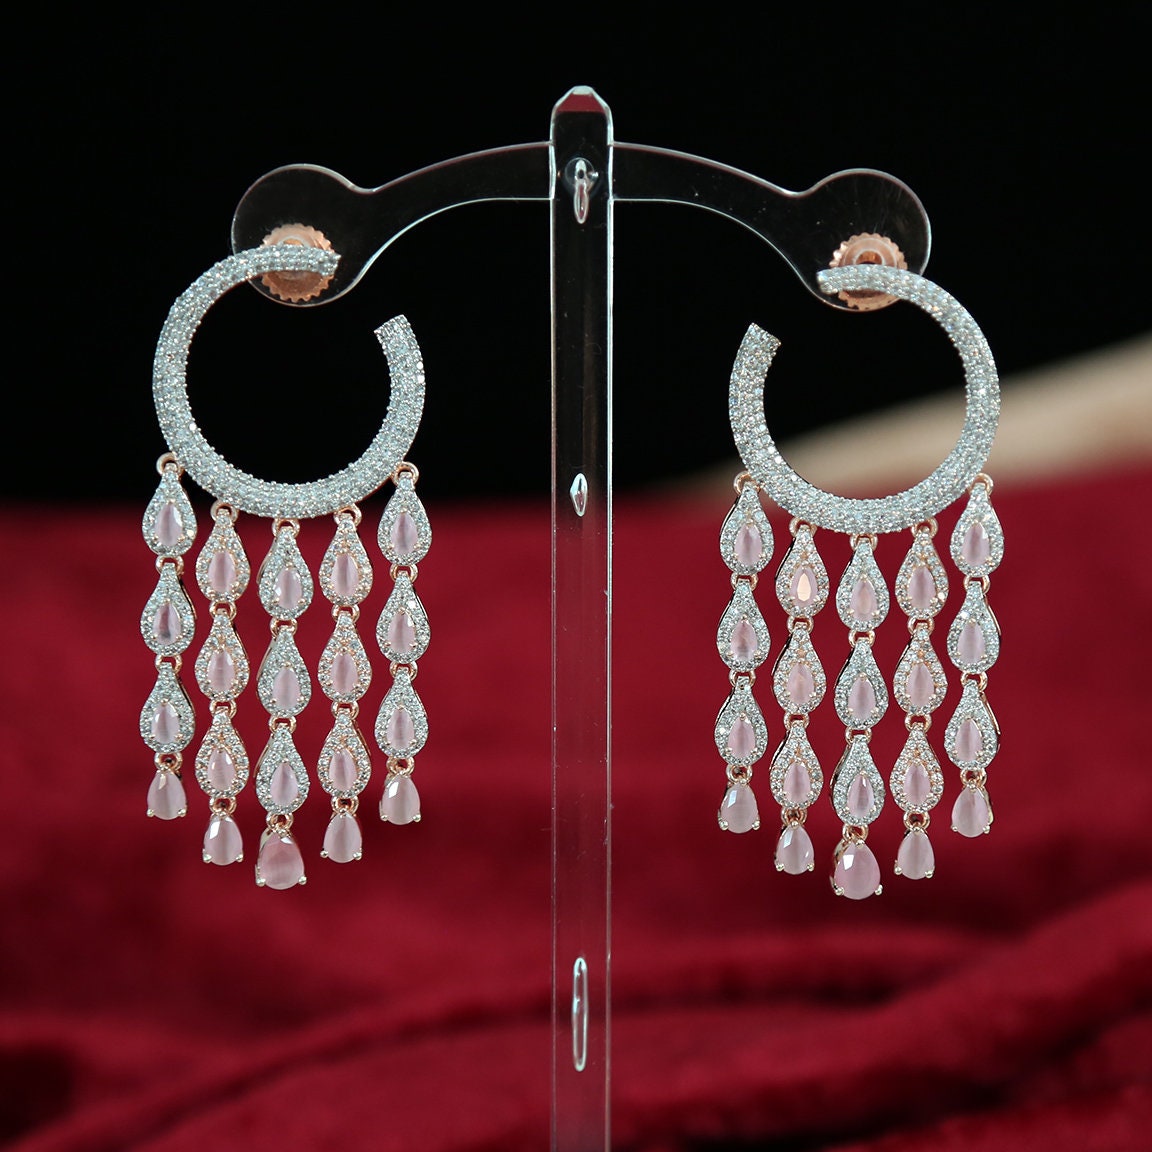 Earrings for women| chandelier earrings diamond in Rose Gold Finish | multi strand dangle earrings | indian wedding earrings online shopping